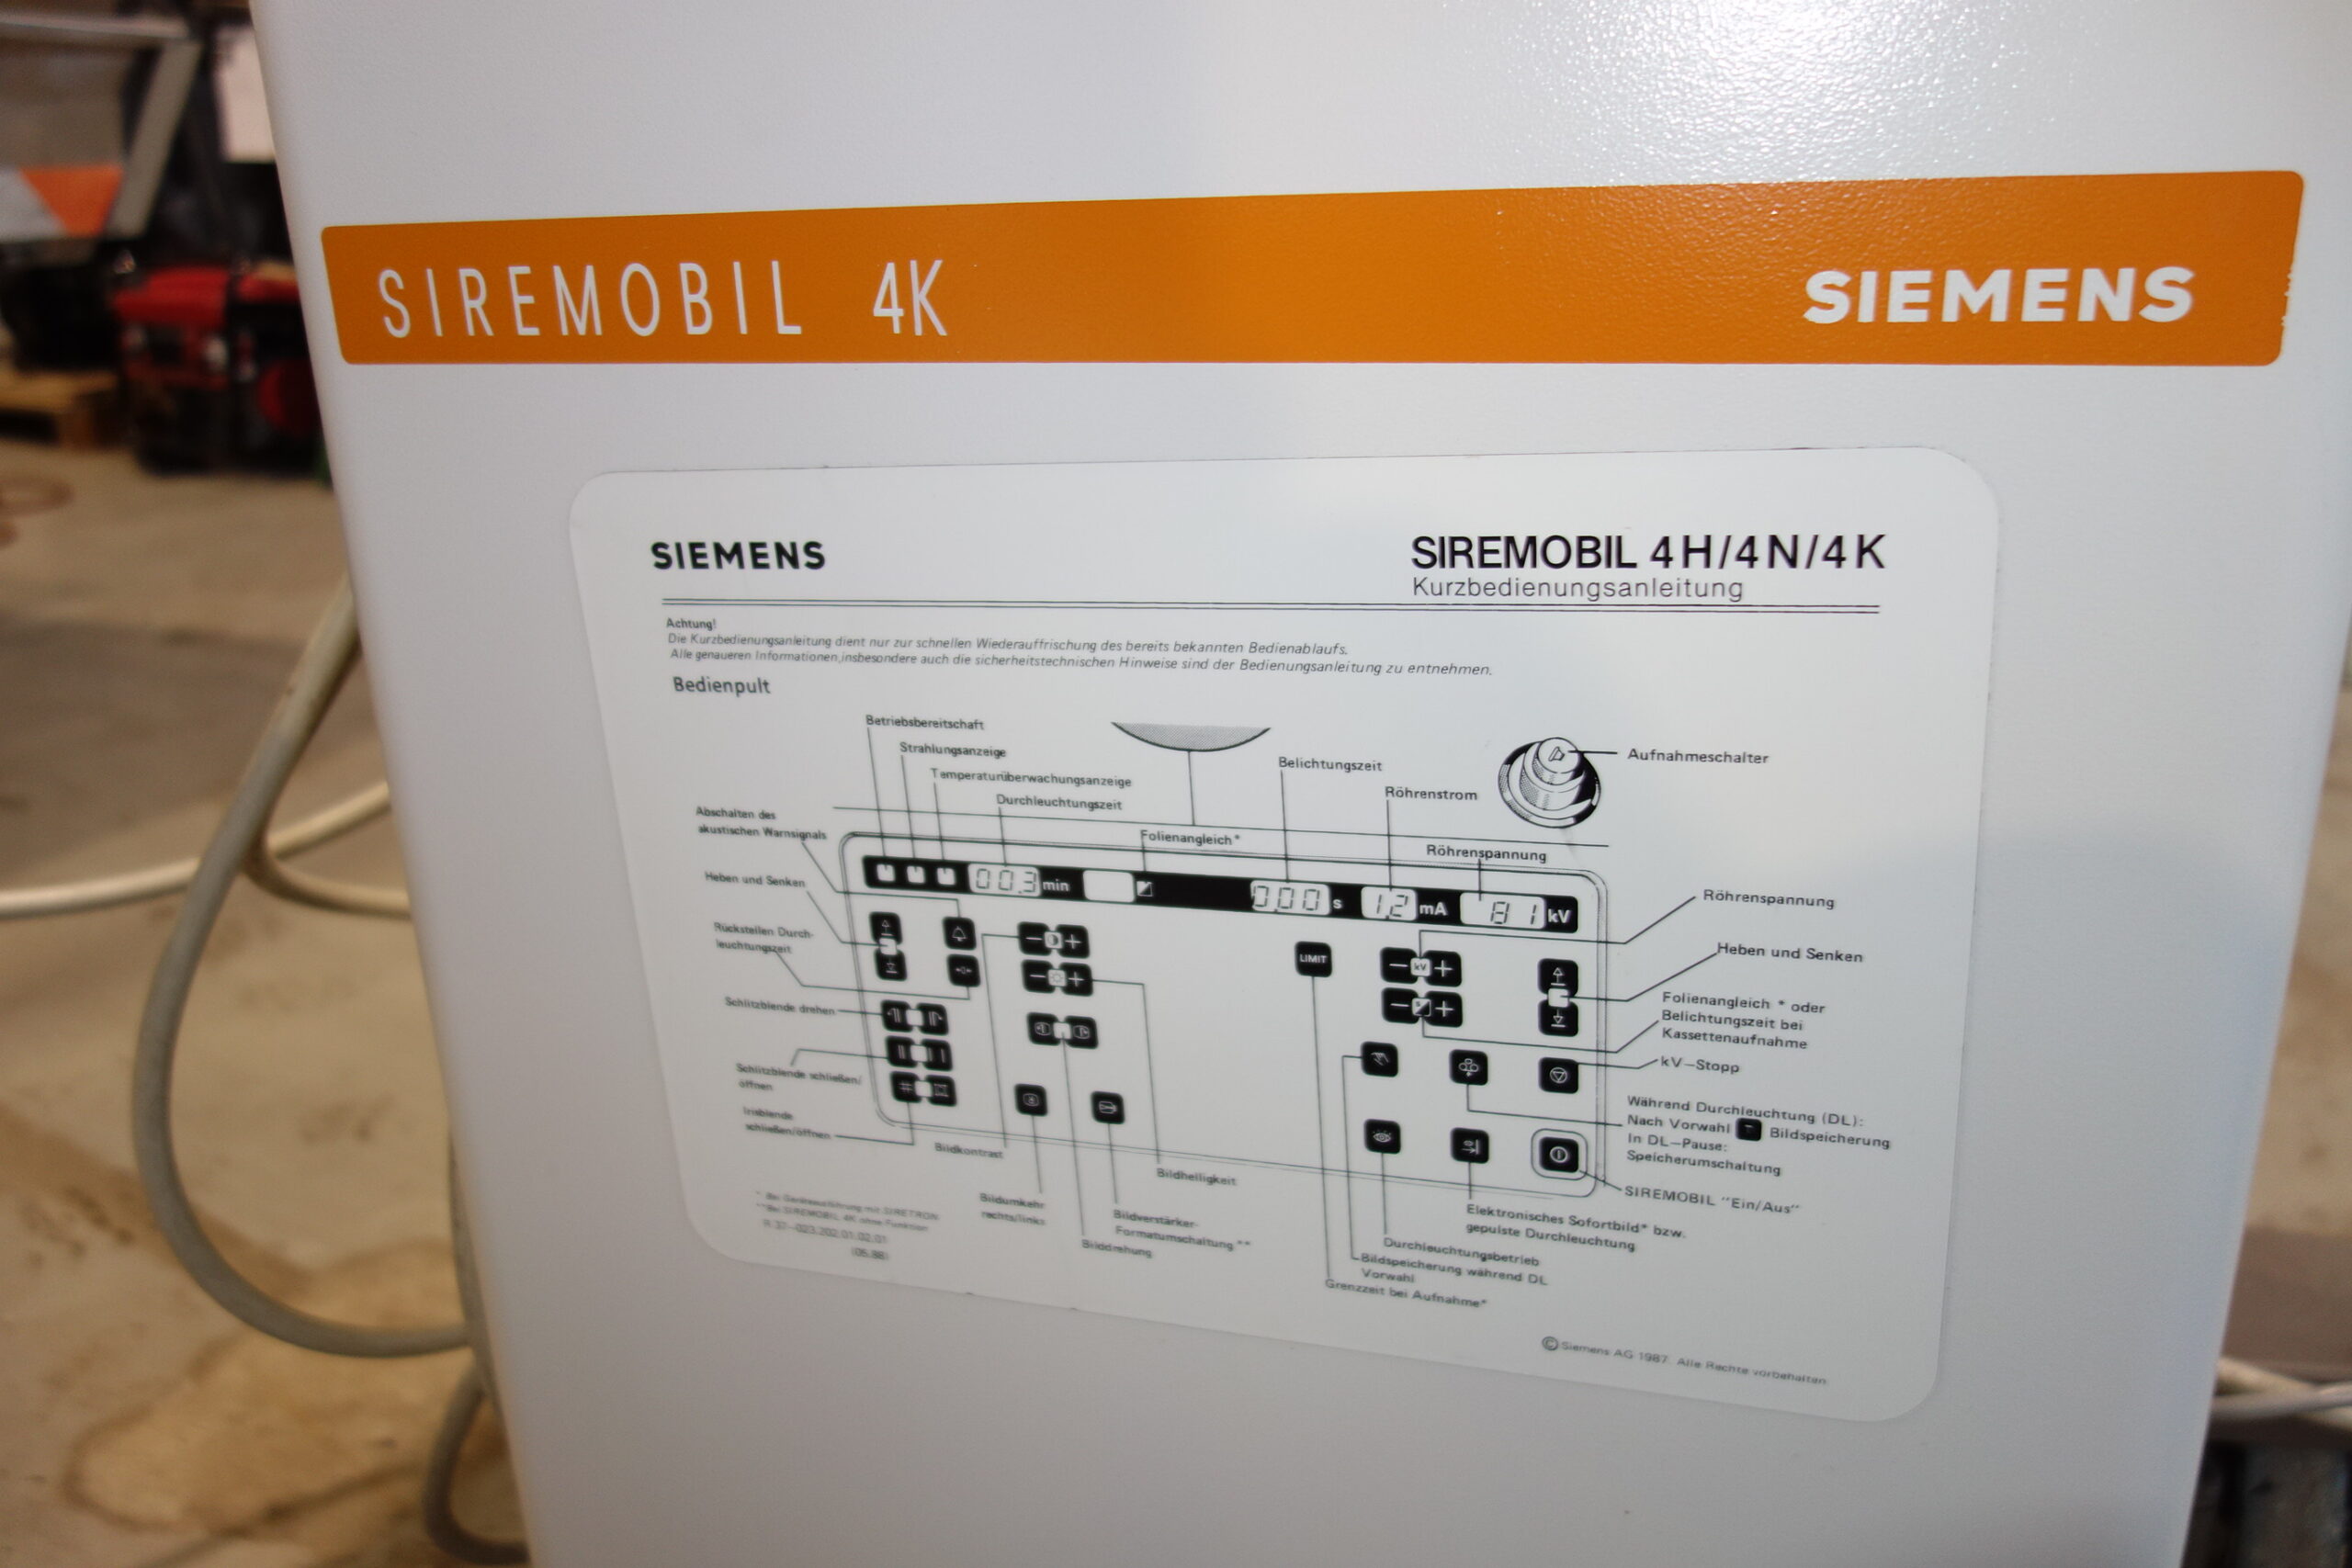 Siemens Siremobil 4K 010